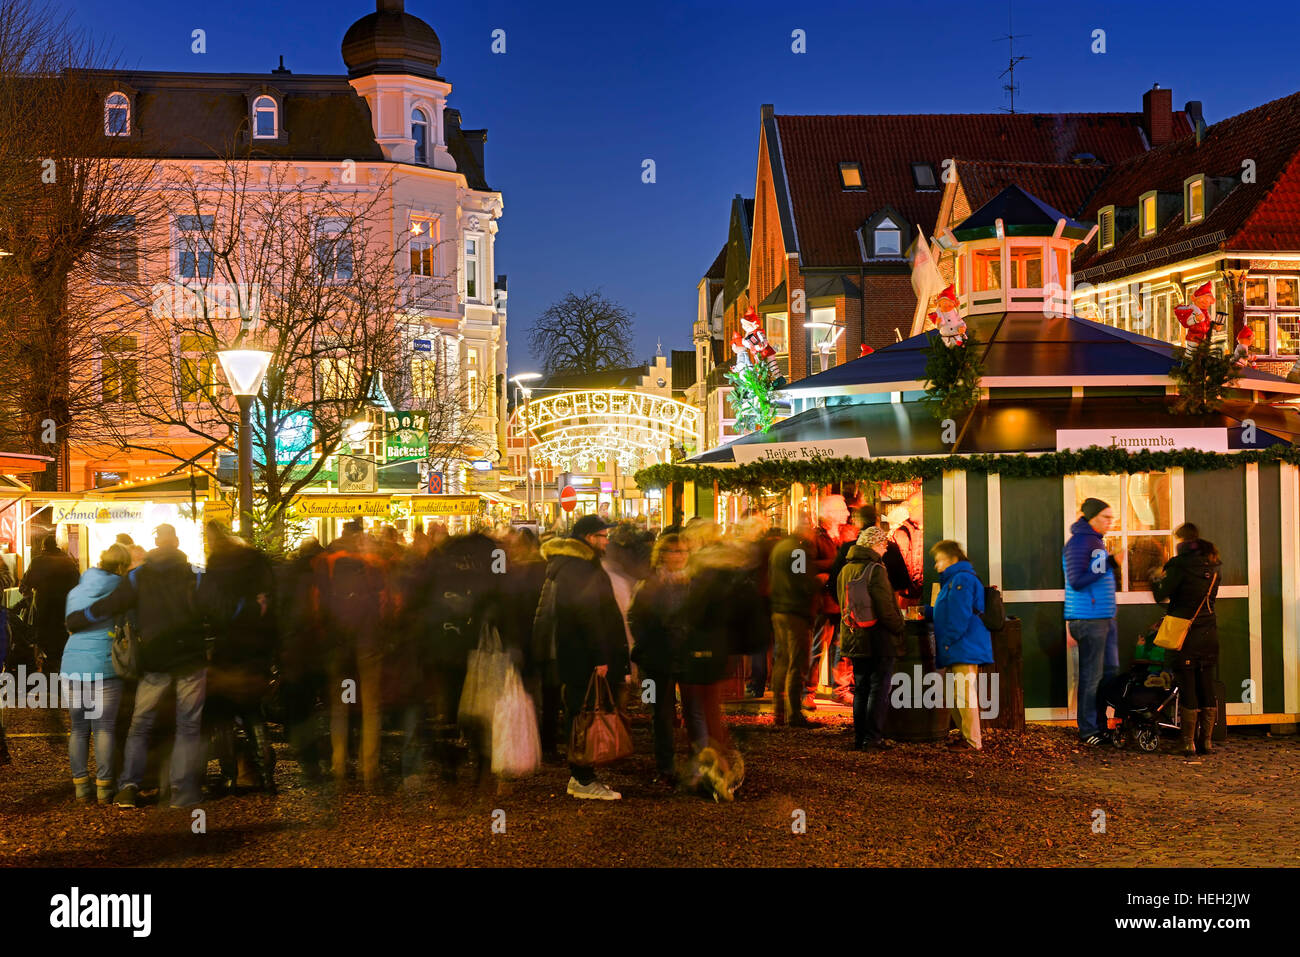 Weihnachtsmarkt am Sachsentor in Bergedorf, Hamburg, Deutschland, Europa Stock Photo